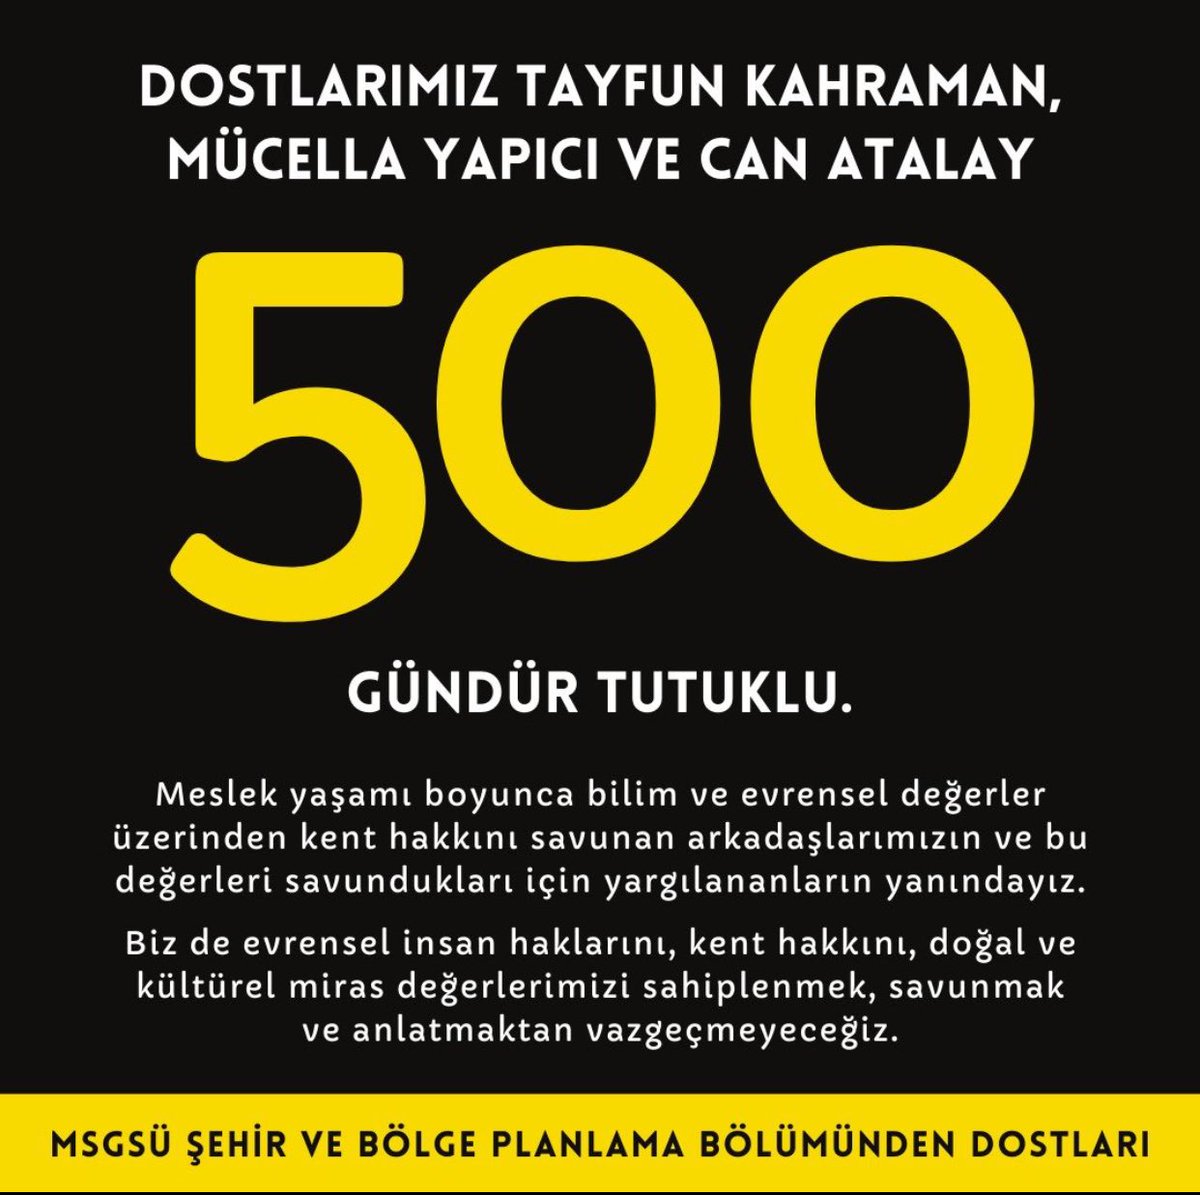 MSGSÜ Şehir Bölge ve Planlama bölümünden hocamız Tayfun Kahraman Gezi Direnişi’ni savunduğu için tam 500 gündür tutuklu. Gezi’yi savunmak suç değildir, #HocamaDokunma!